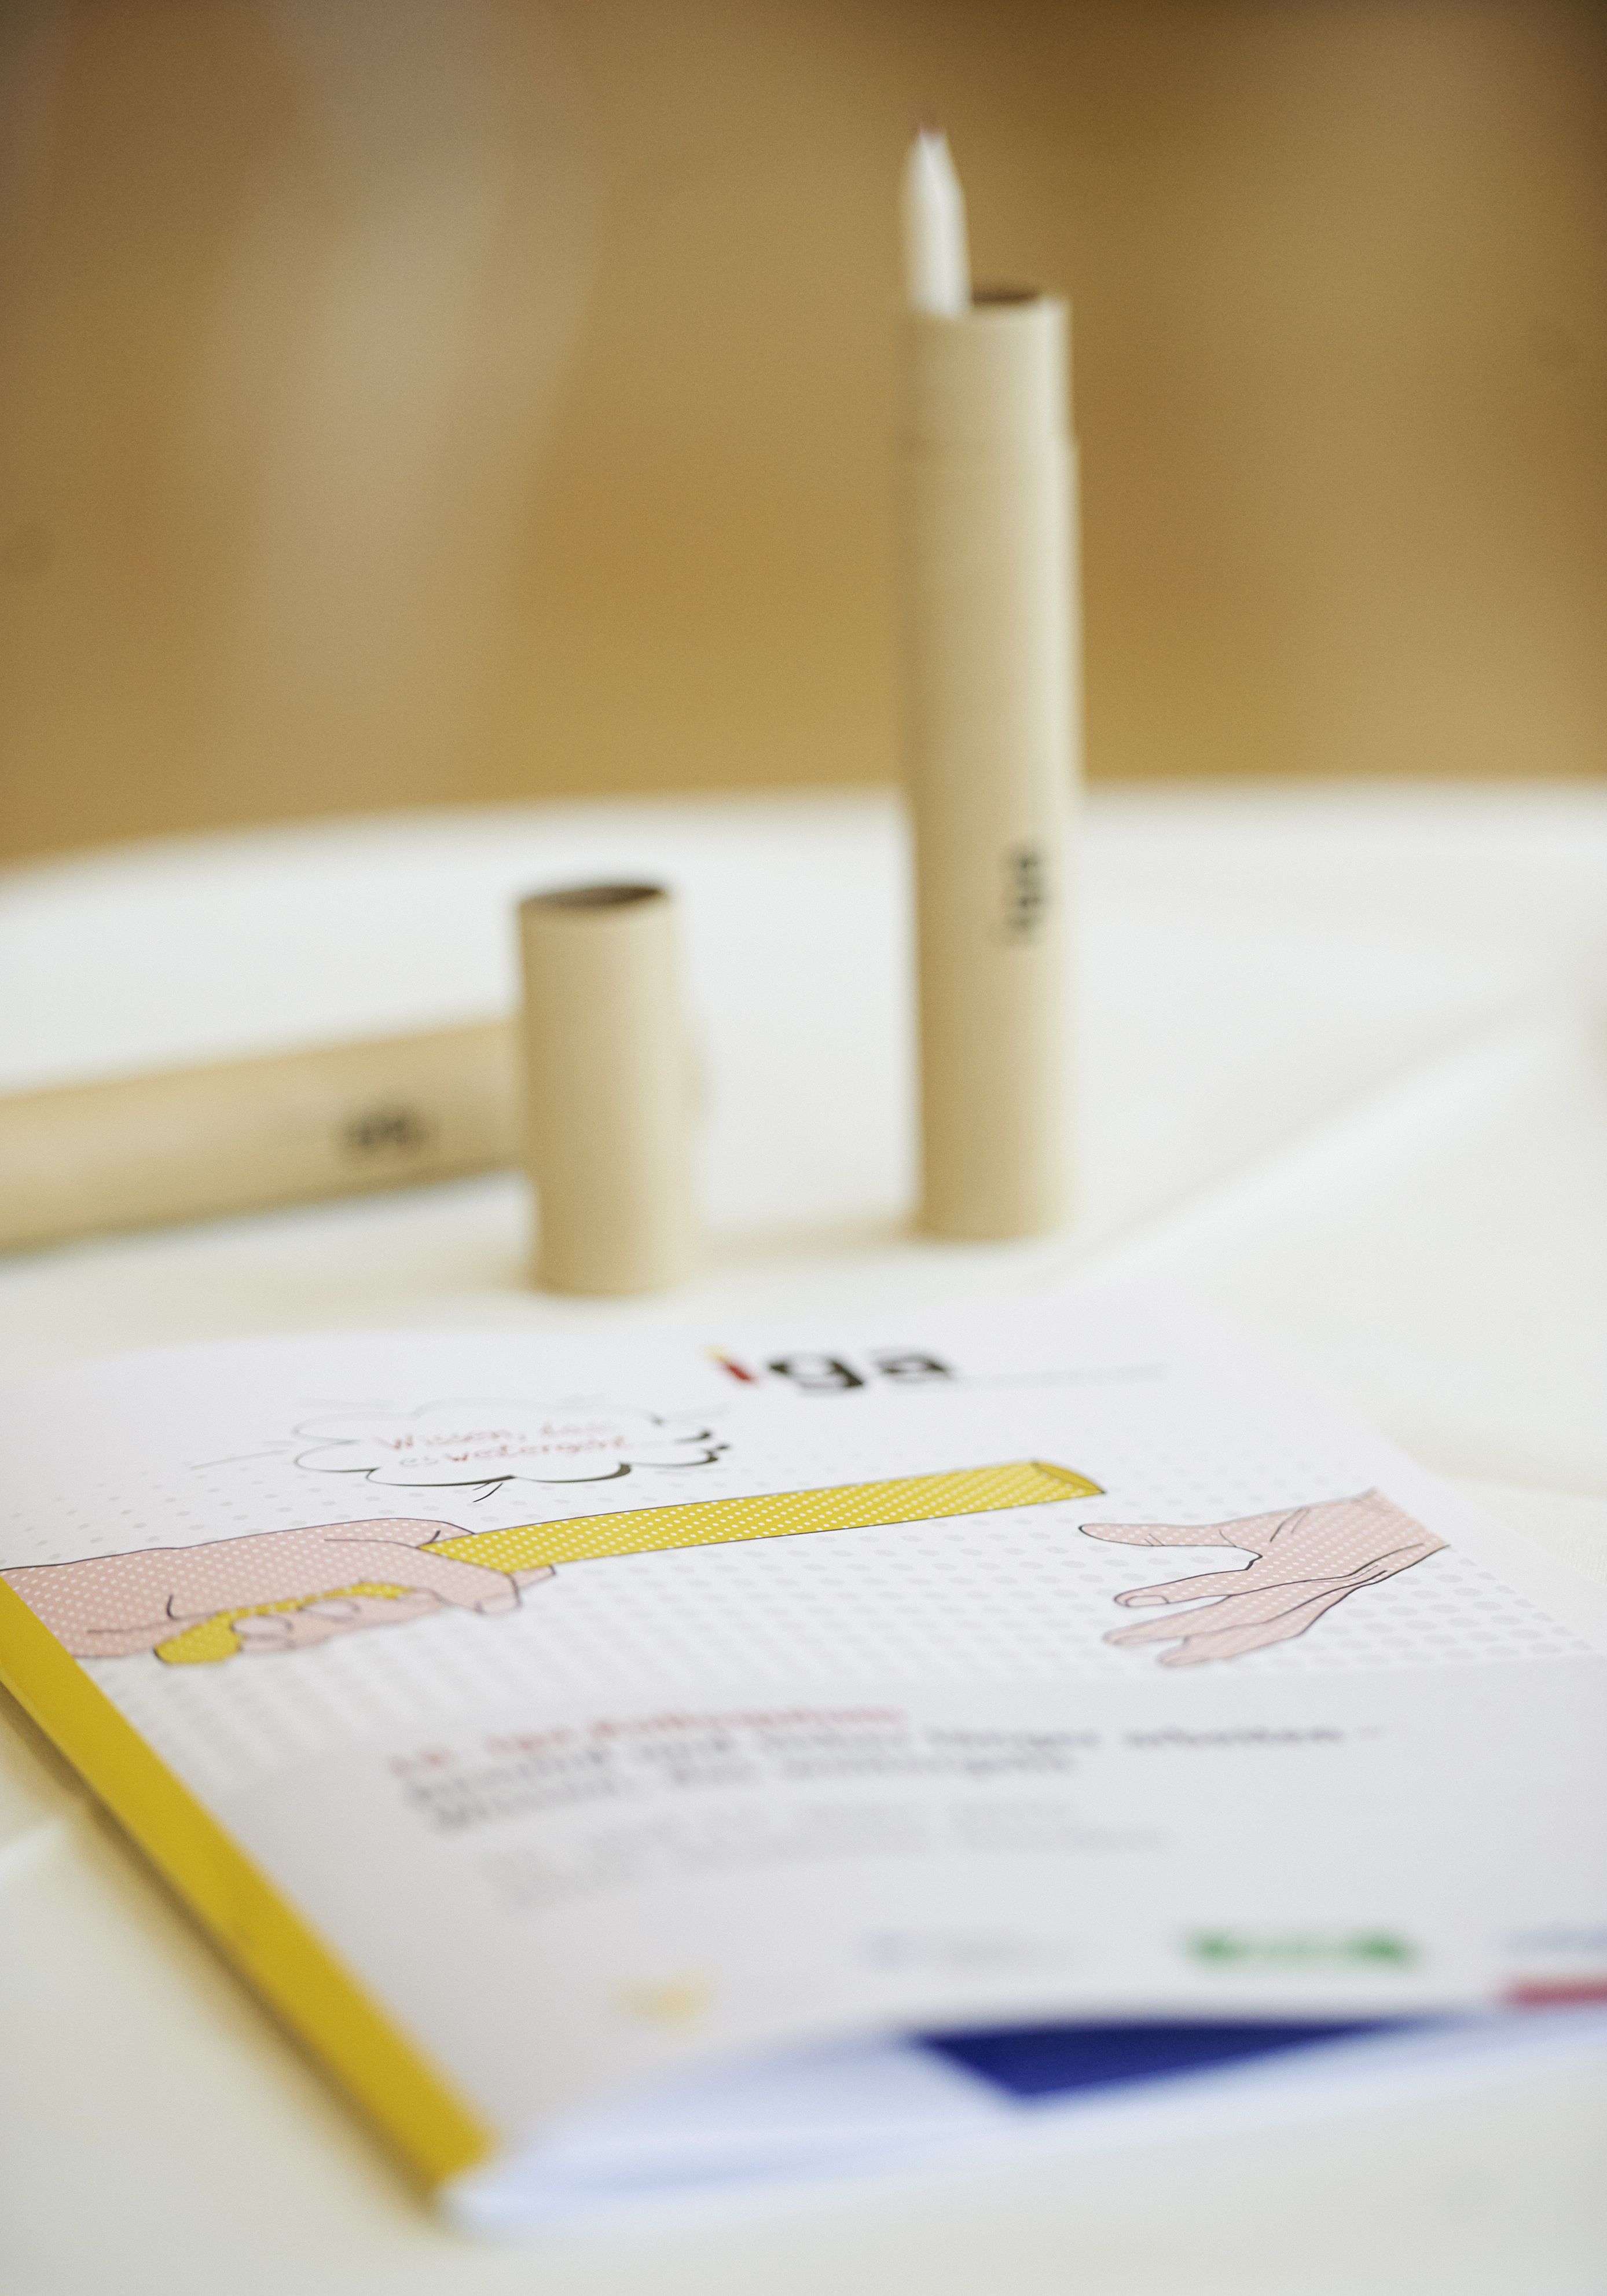 iga.Kolloquium 2015: Auf einem Tisch liegt das Programm, dahinter steht eine Stiftbox in Form eines Staffelstabes.